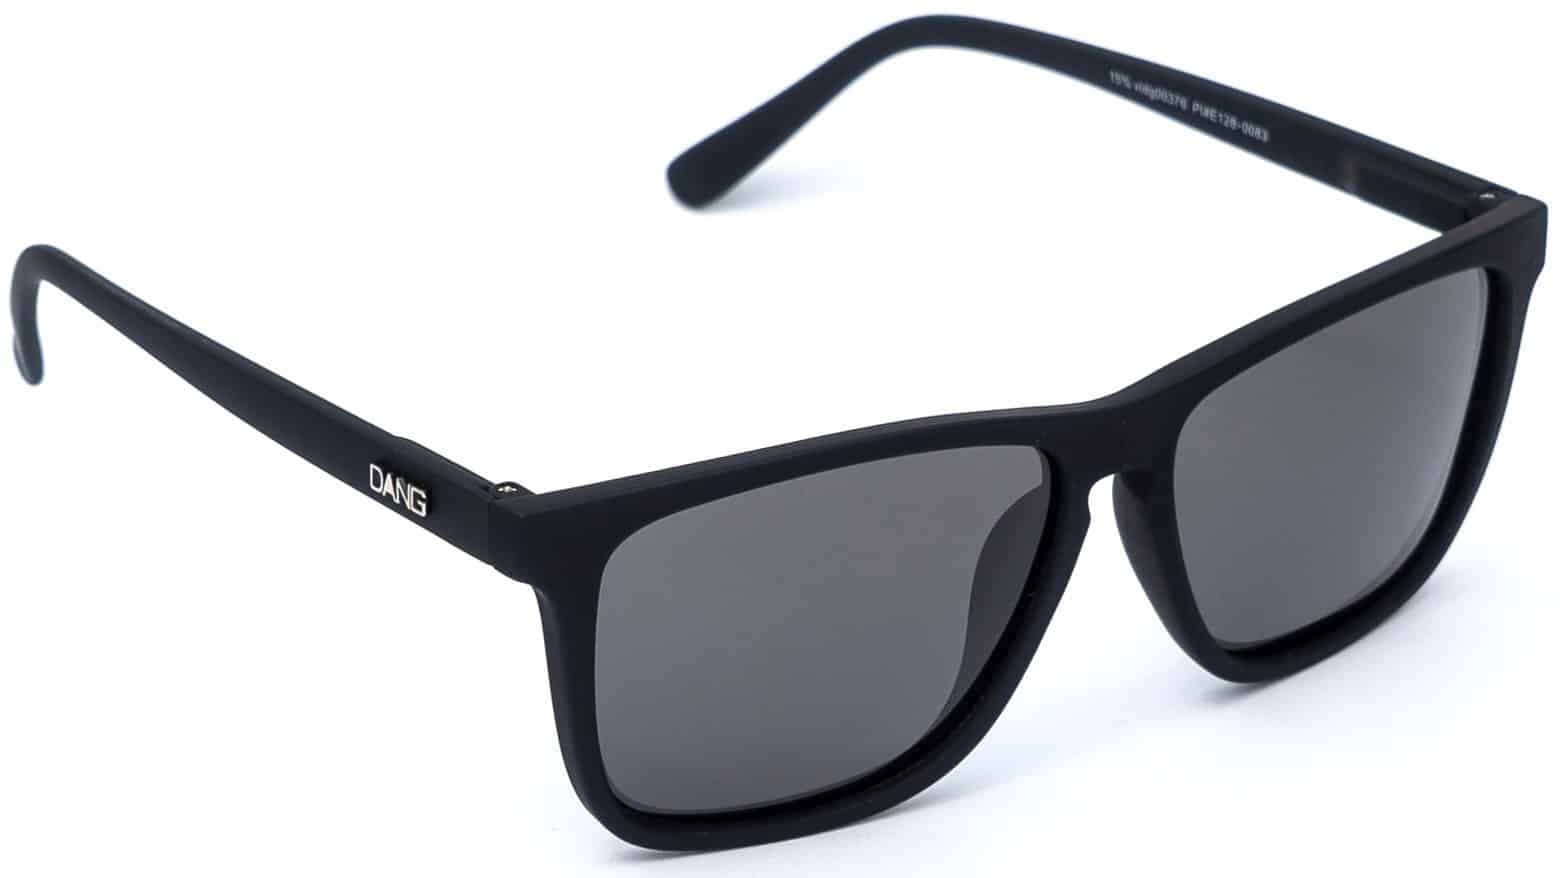 Dang Shades Recoil Polarized Sunglasses - black/black polarized lens ...